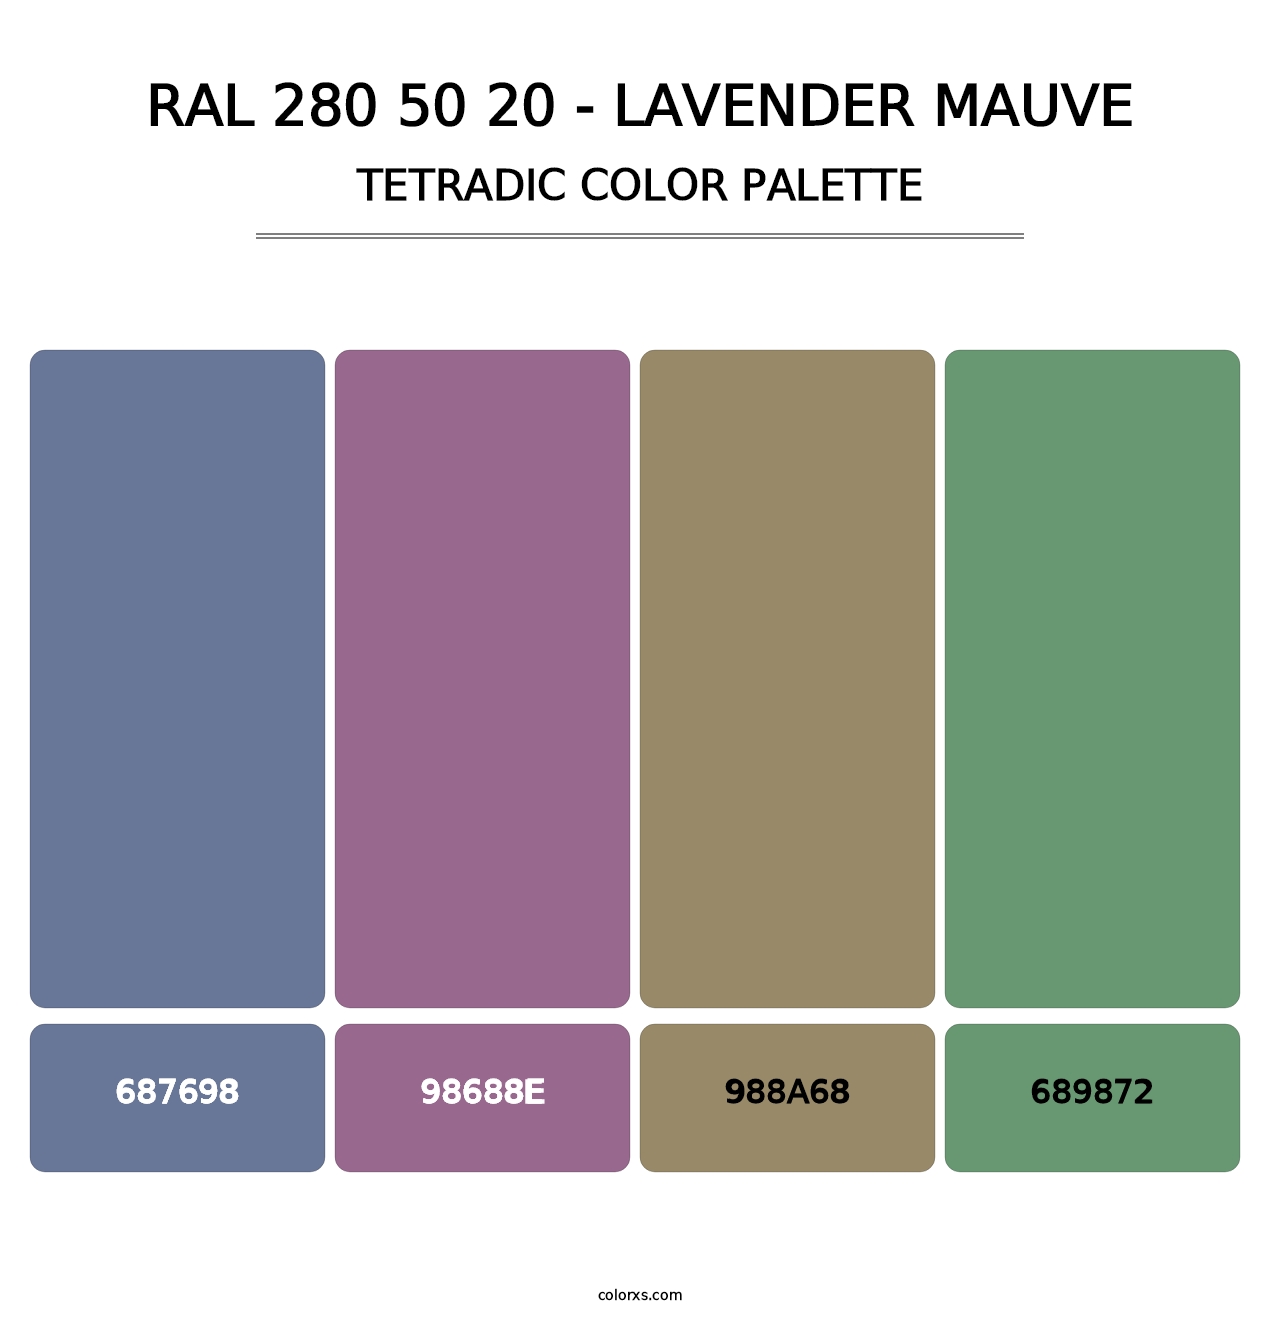 RAL 280 50 20 - Lavender Mauve - Tetradic Color Palette